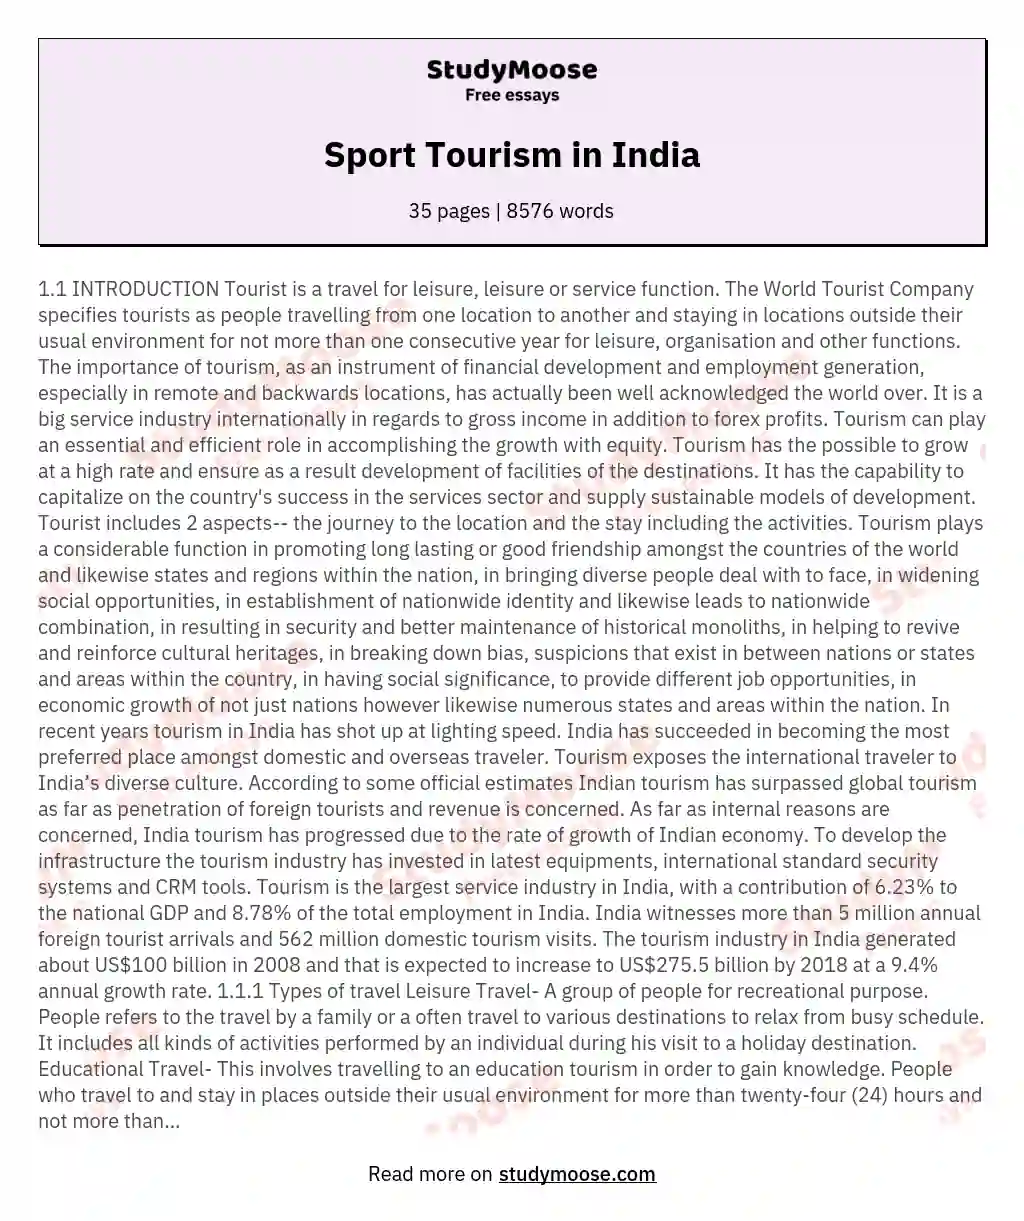 Sport Tourism in India essay